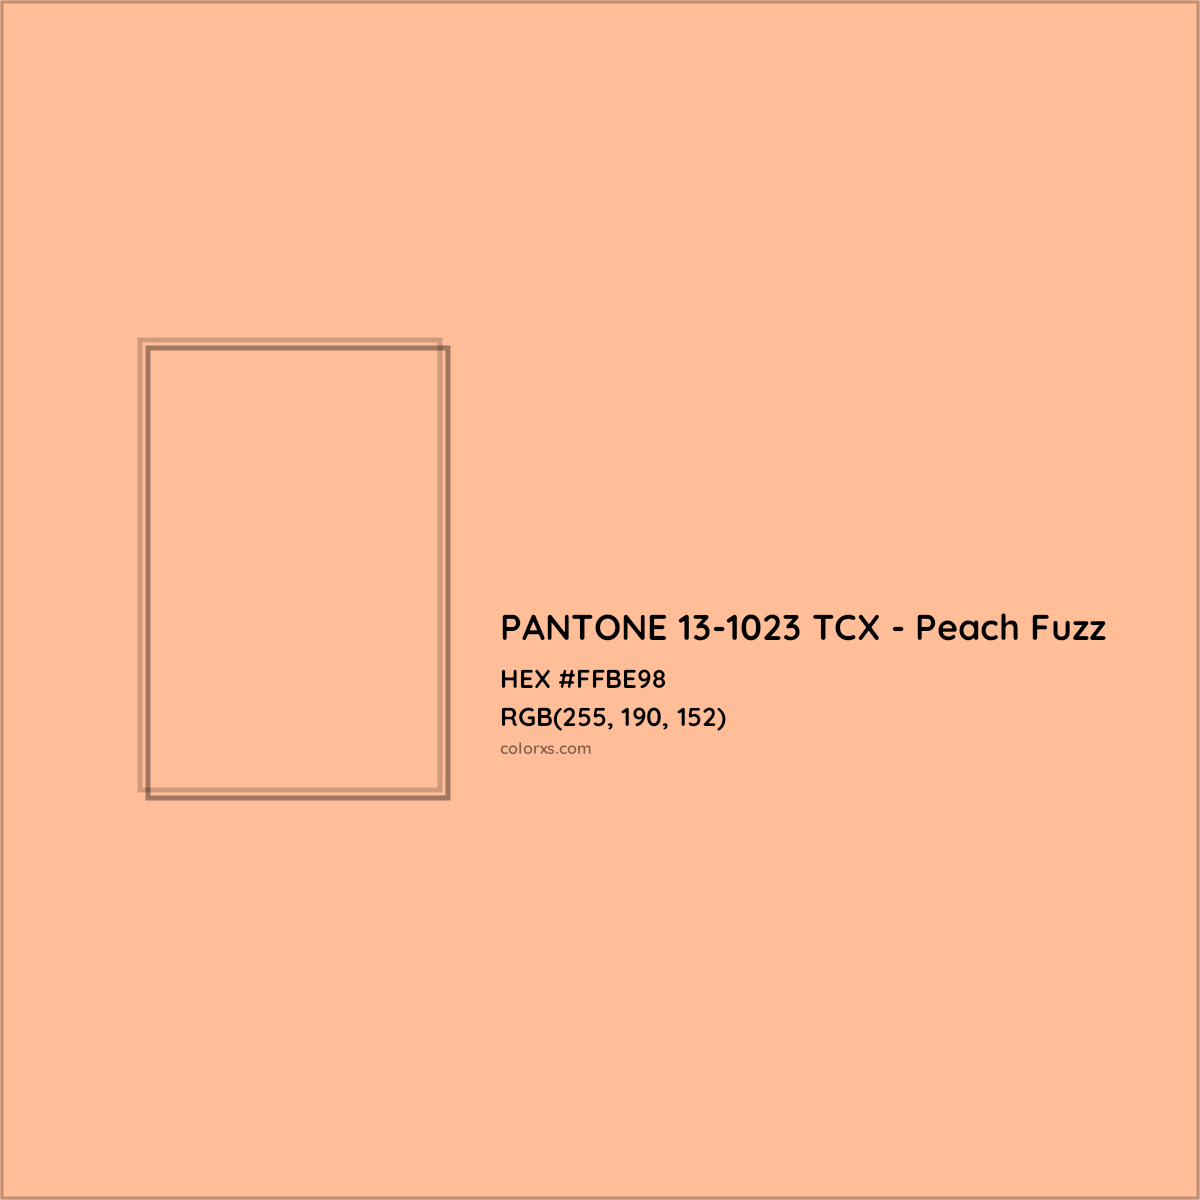 About PANTONE 131023 TCX Peach Fuzz Color Color codes, similar